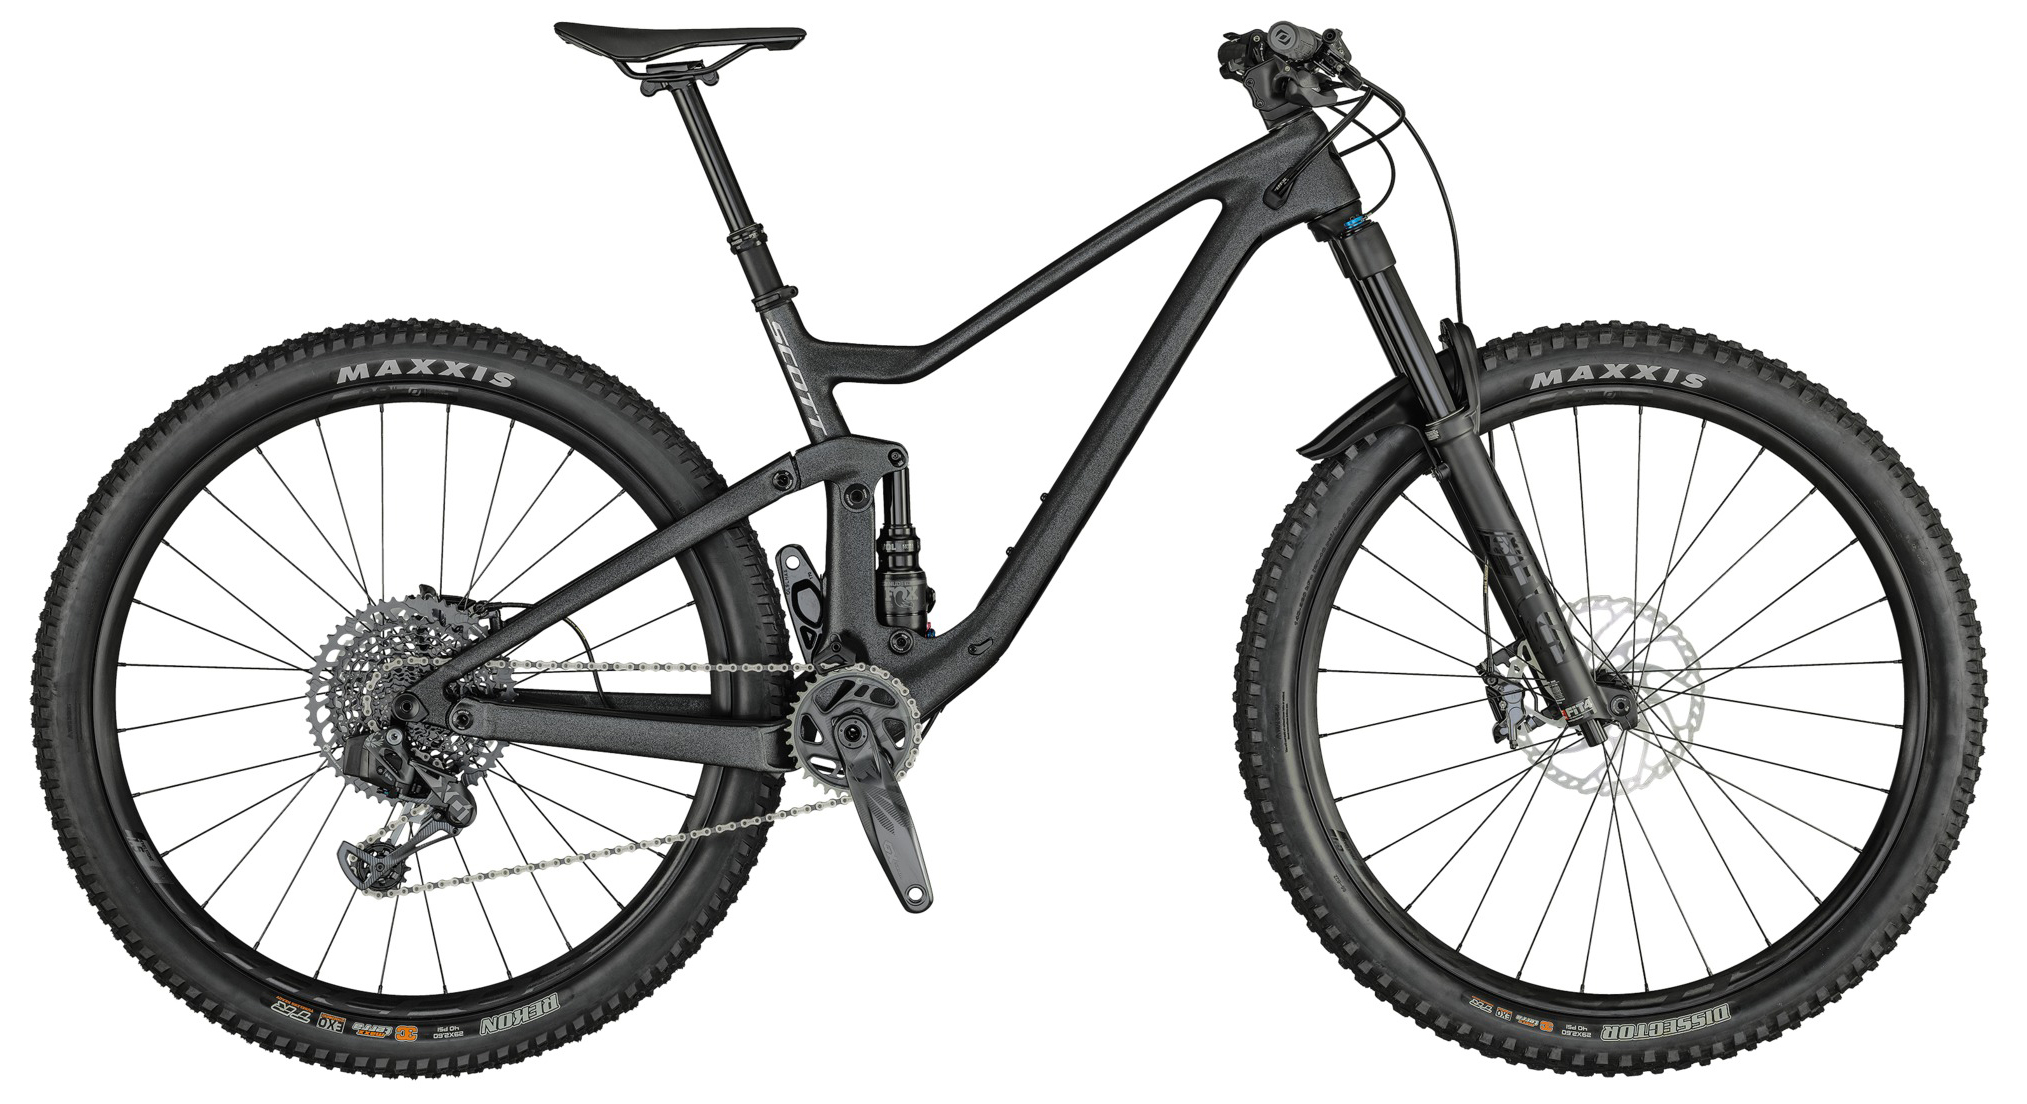  Велосипед Scott Genius 910 AXS (2021) 2021